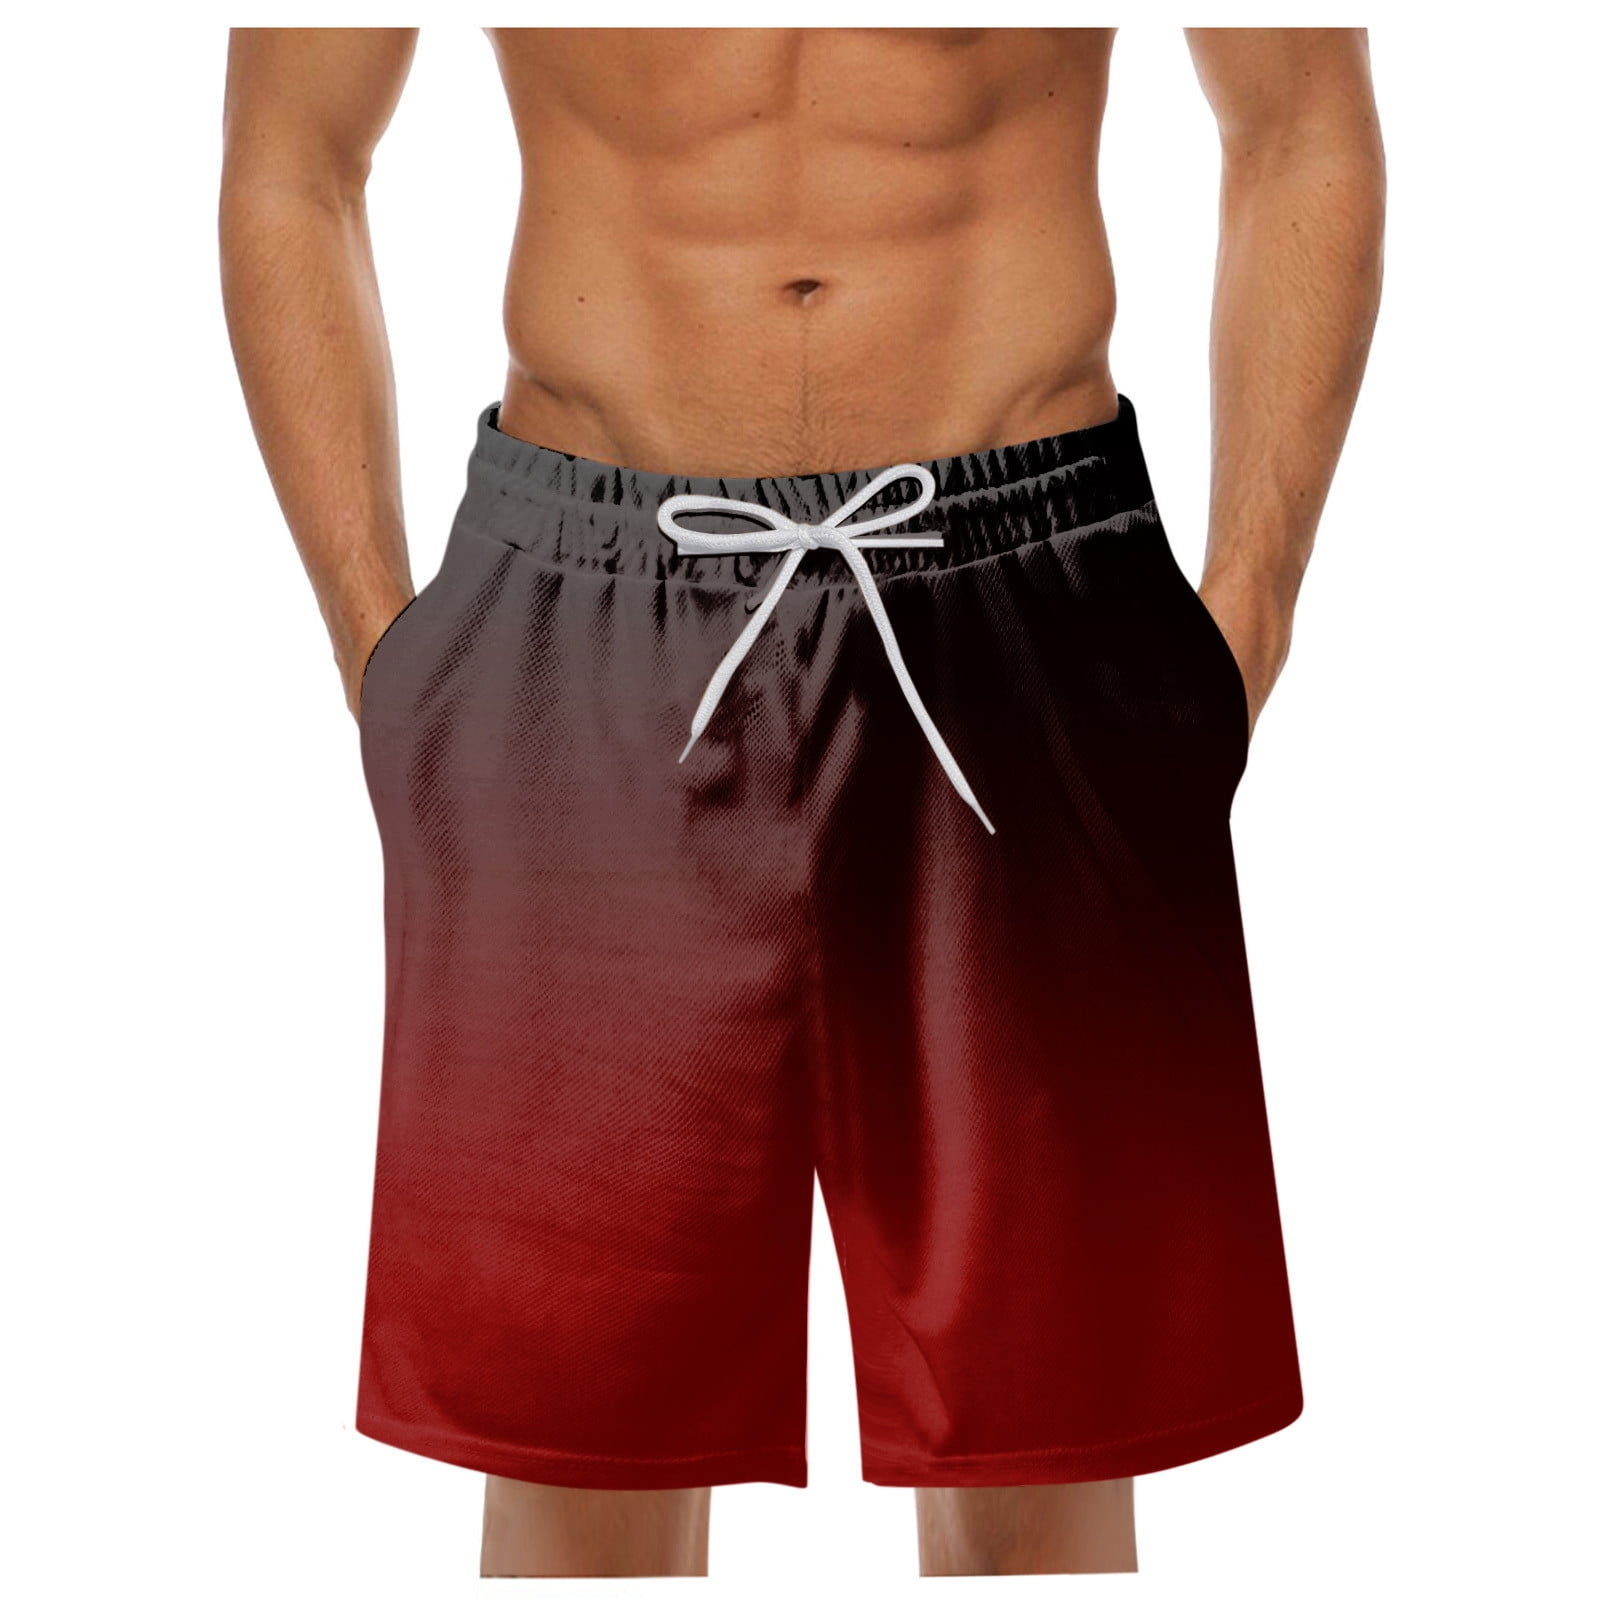 Pedort Shorts For Men Board Shorts For Men Swim Trunks for Men, Boys ...